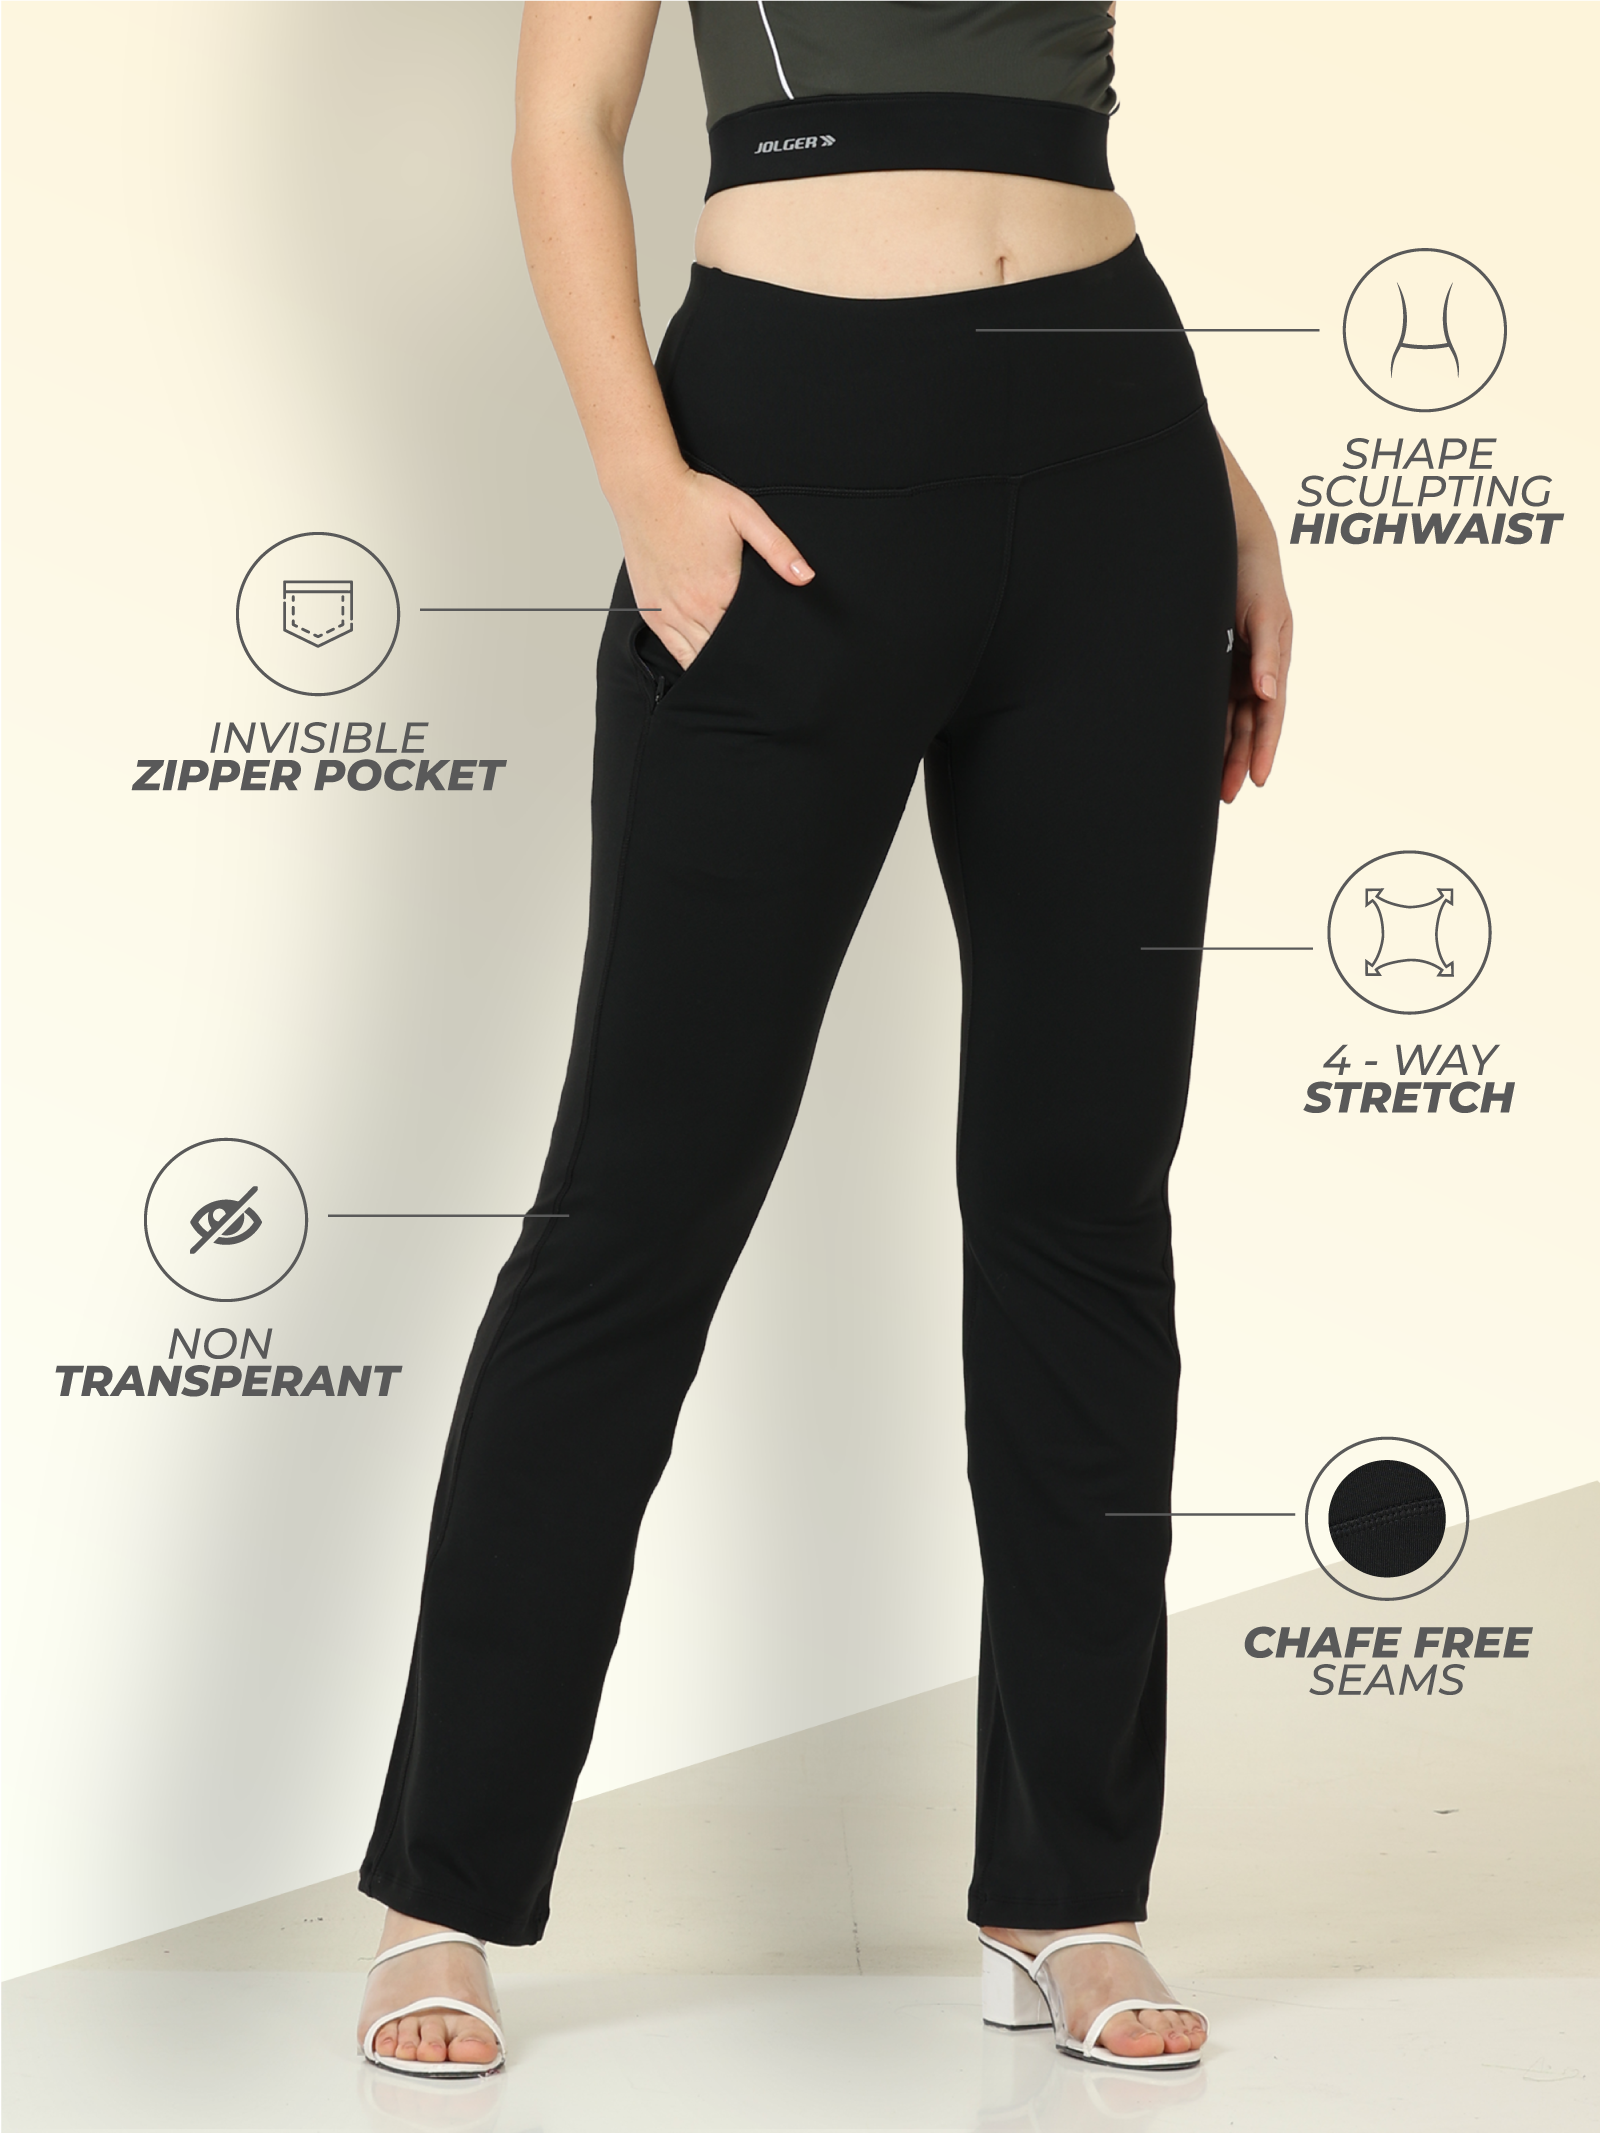 Fashion (Black Long Velvet 2)Plus Size Slit Black Flare Pants For Women  Trousers Korean Style Casual Office Lady Female High Waist Long Bell Bottom  Pants XXA @ Best Price Online